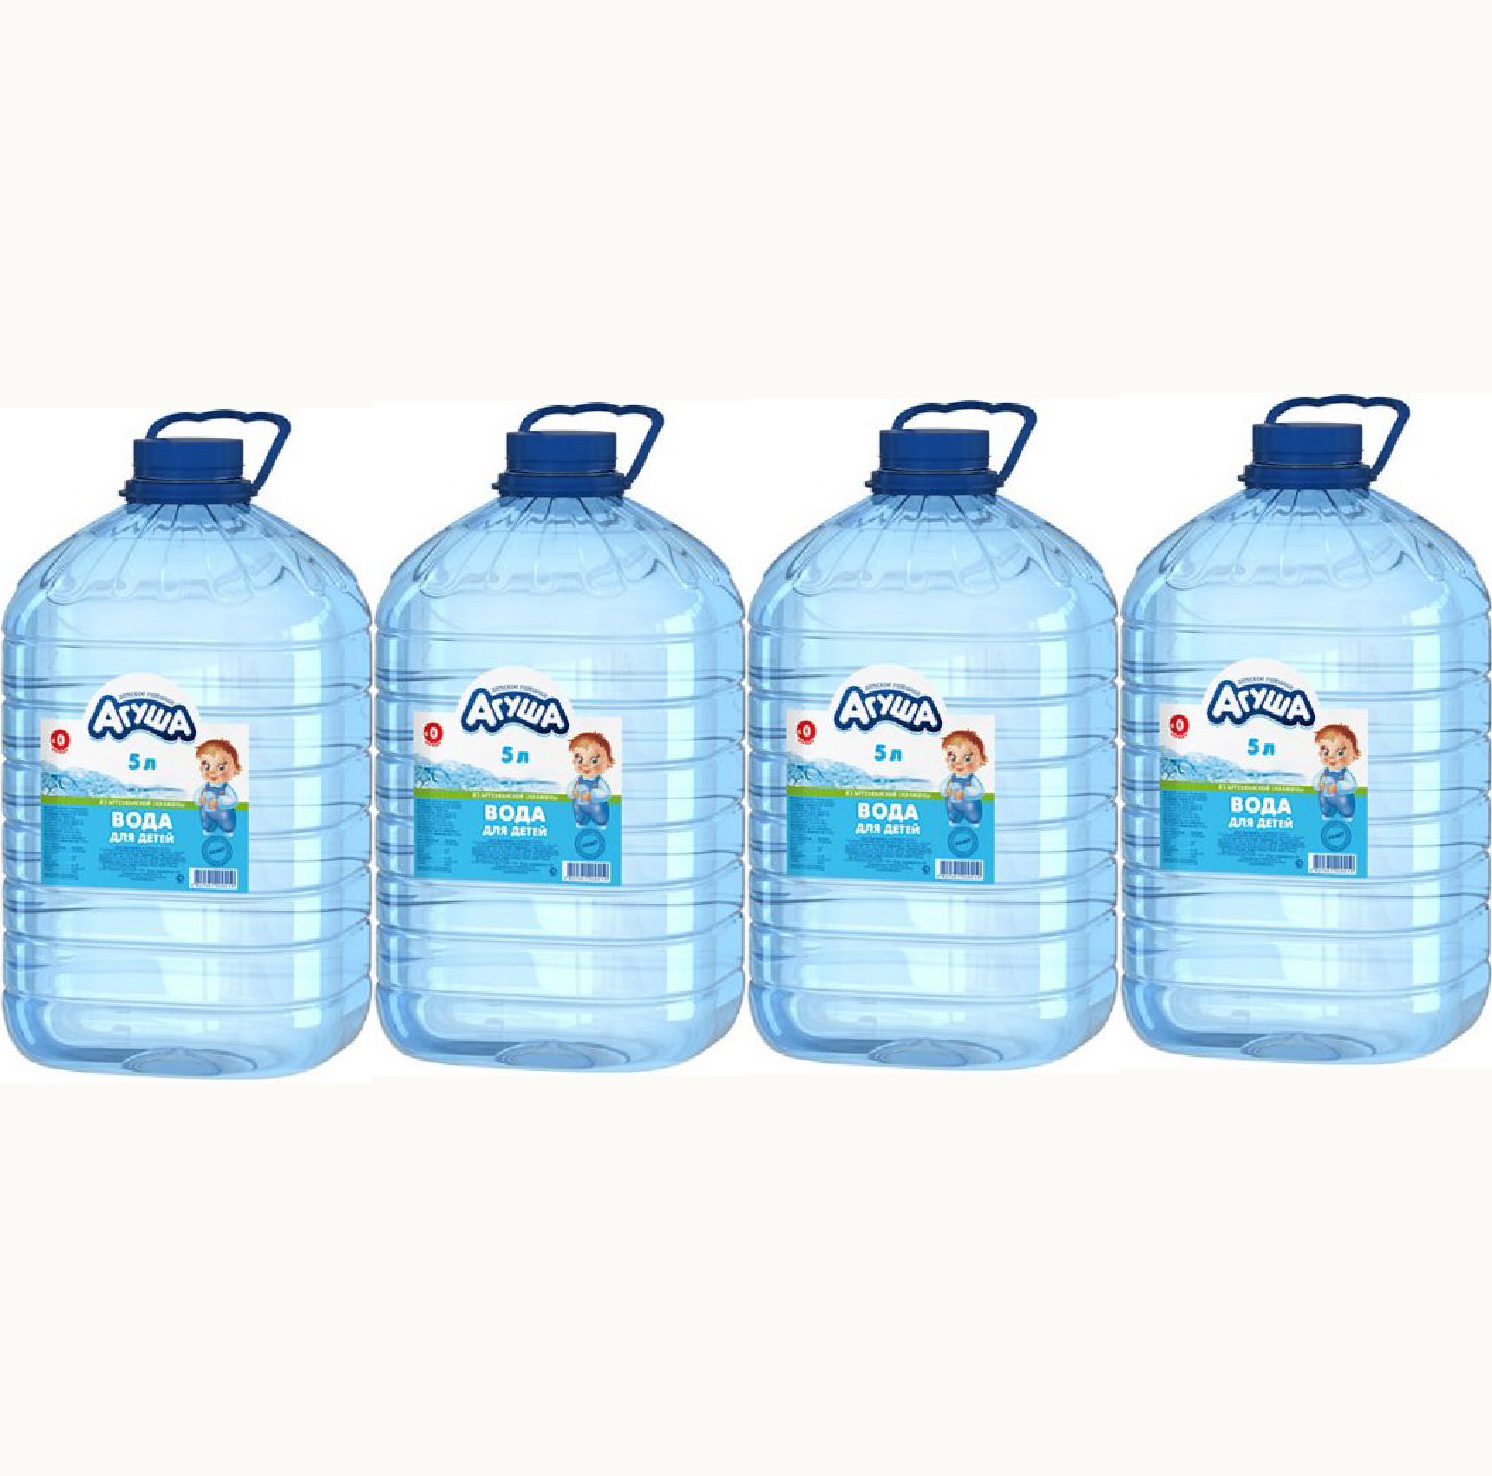 Сколько в бутылке воды кг. Вода Агуша 5 л. Питьевая вода Агуша 5 литров. Канистра для питьевой воды. Пятилитровая бутылка воды.